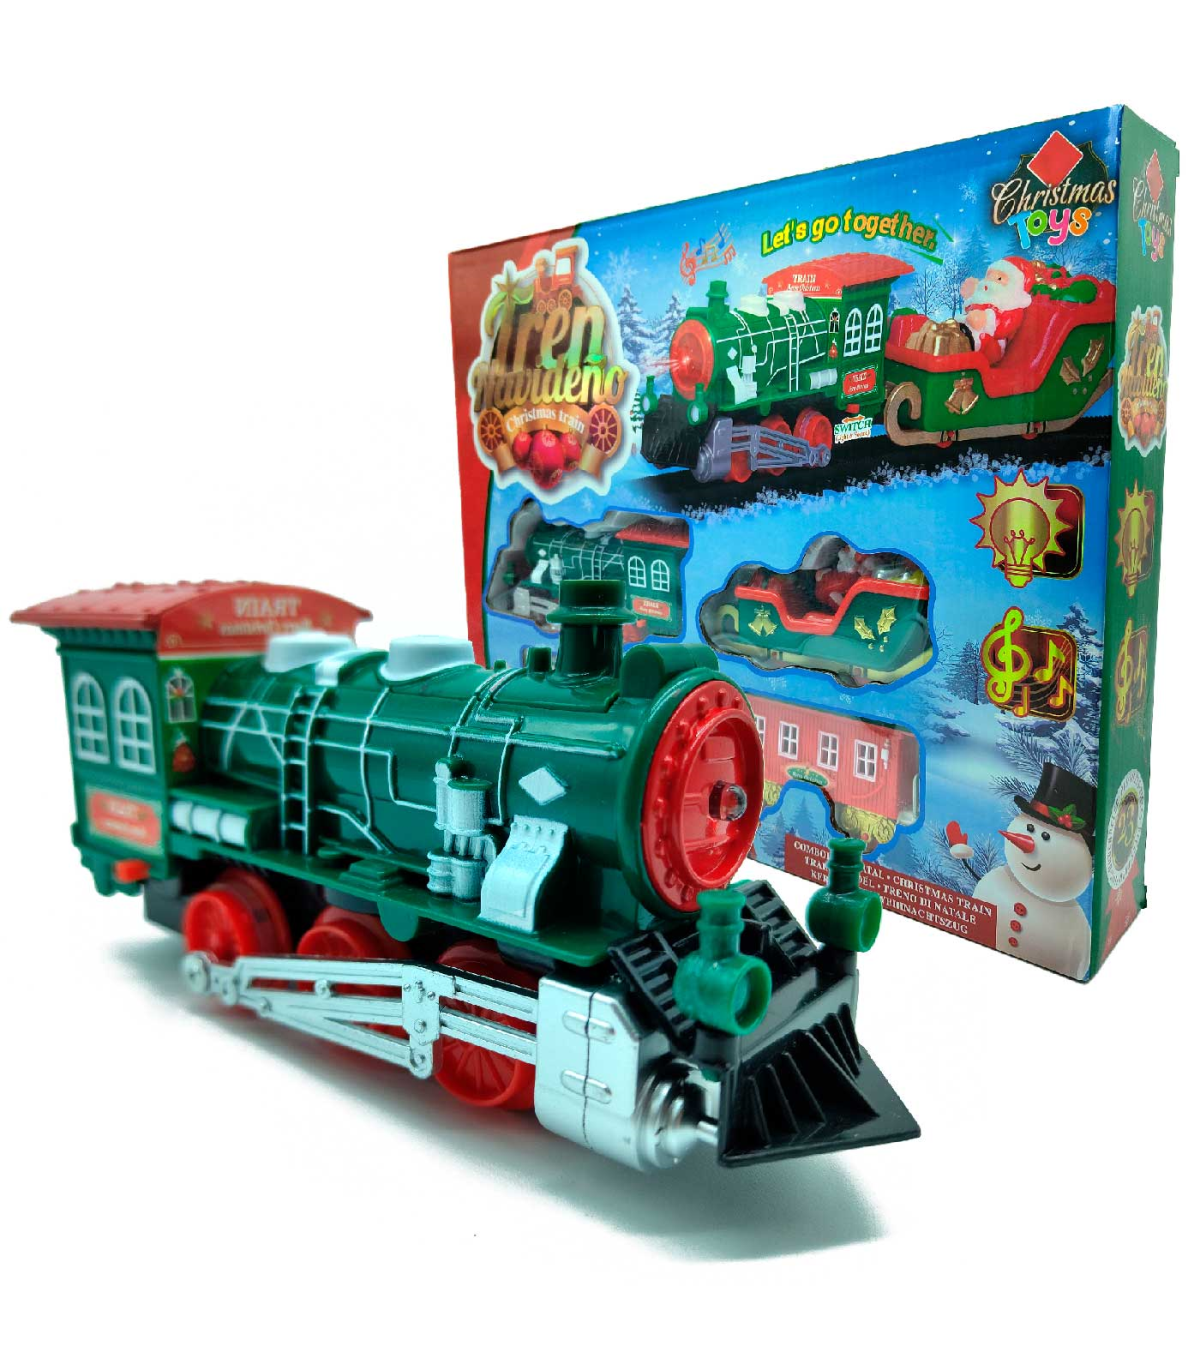 Tradineur - Tren Navideño de juguete 23 piezas con luces y sonido -  Fabricado en plástico - Juguete para Navidad - Raíl hasta 13